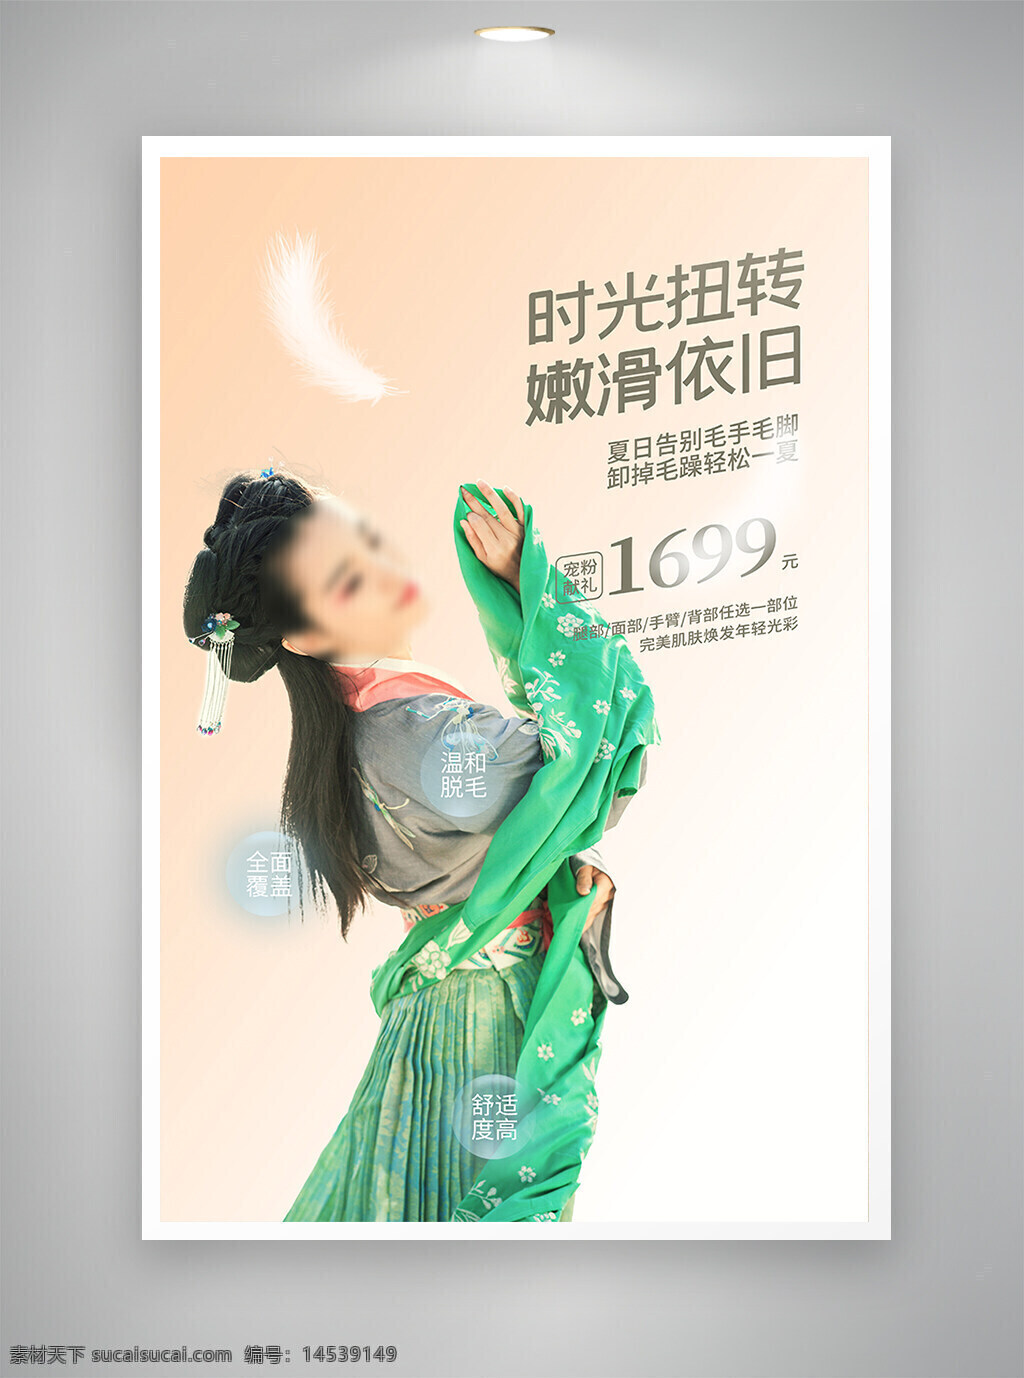 中国风海报 促销海报 节日海报 古风海报